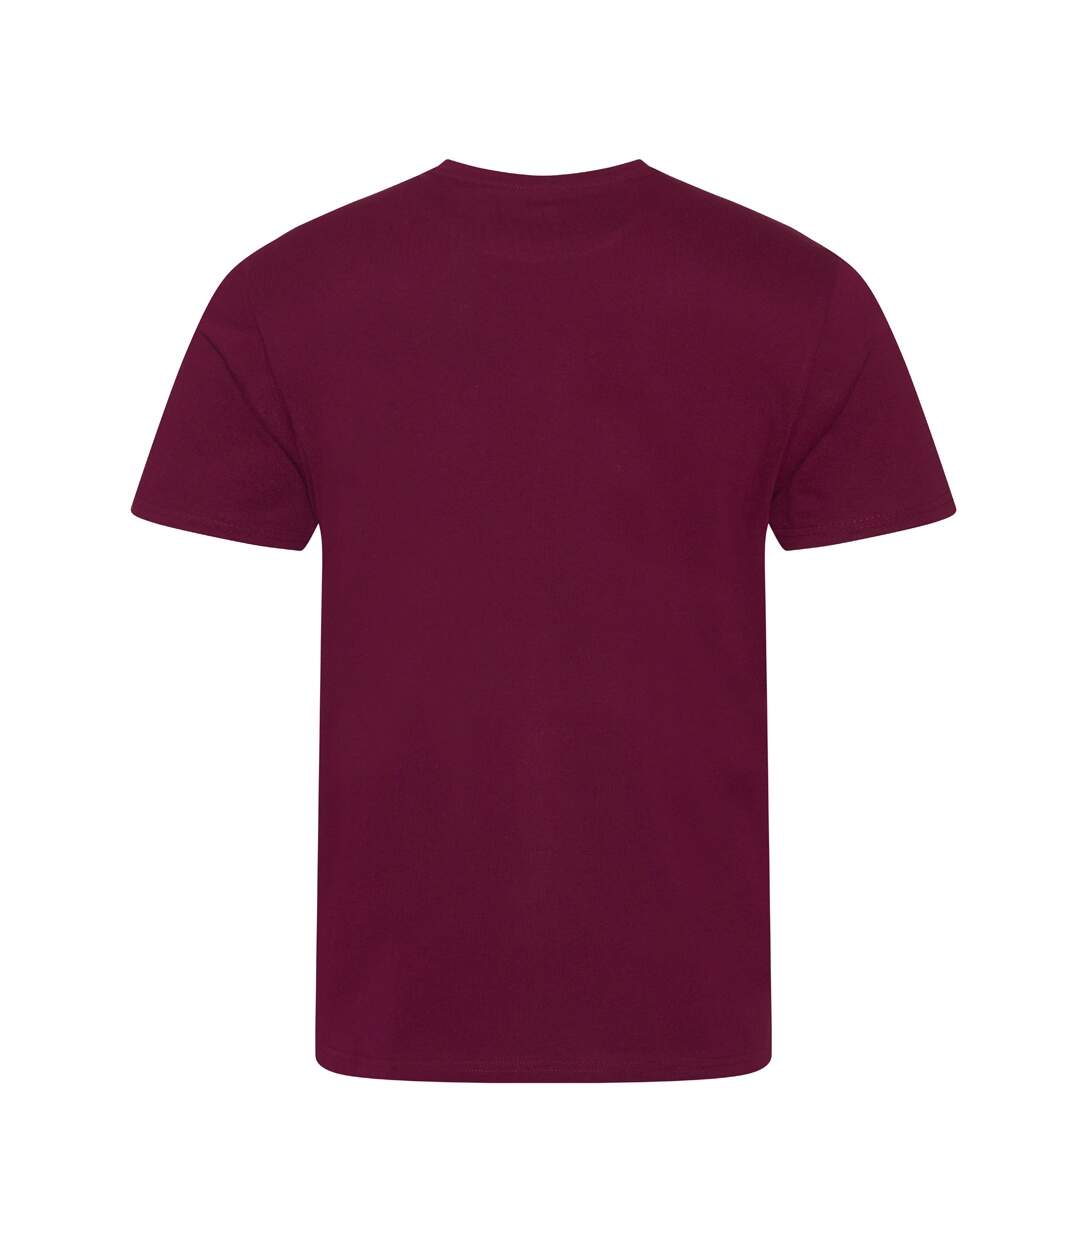 Ecologie - T-shirt - Hommes (Bordeaux) - UTPC3190